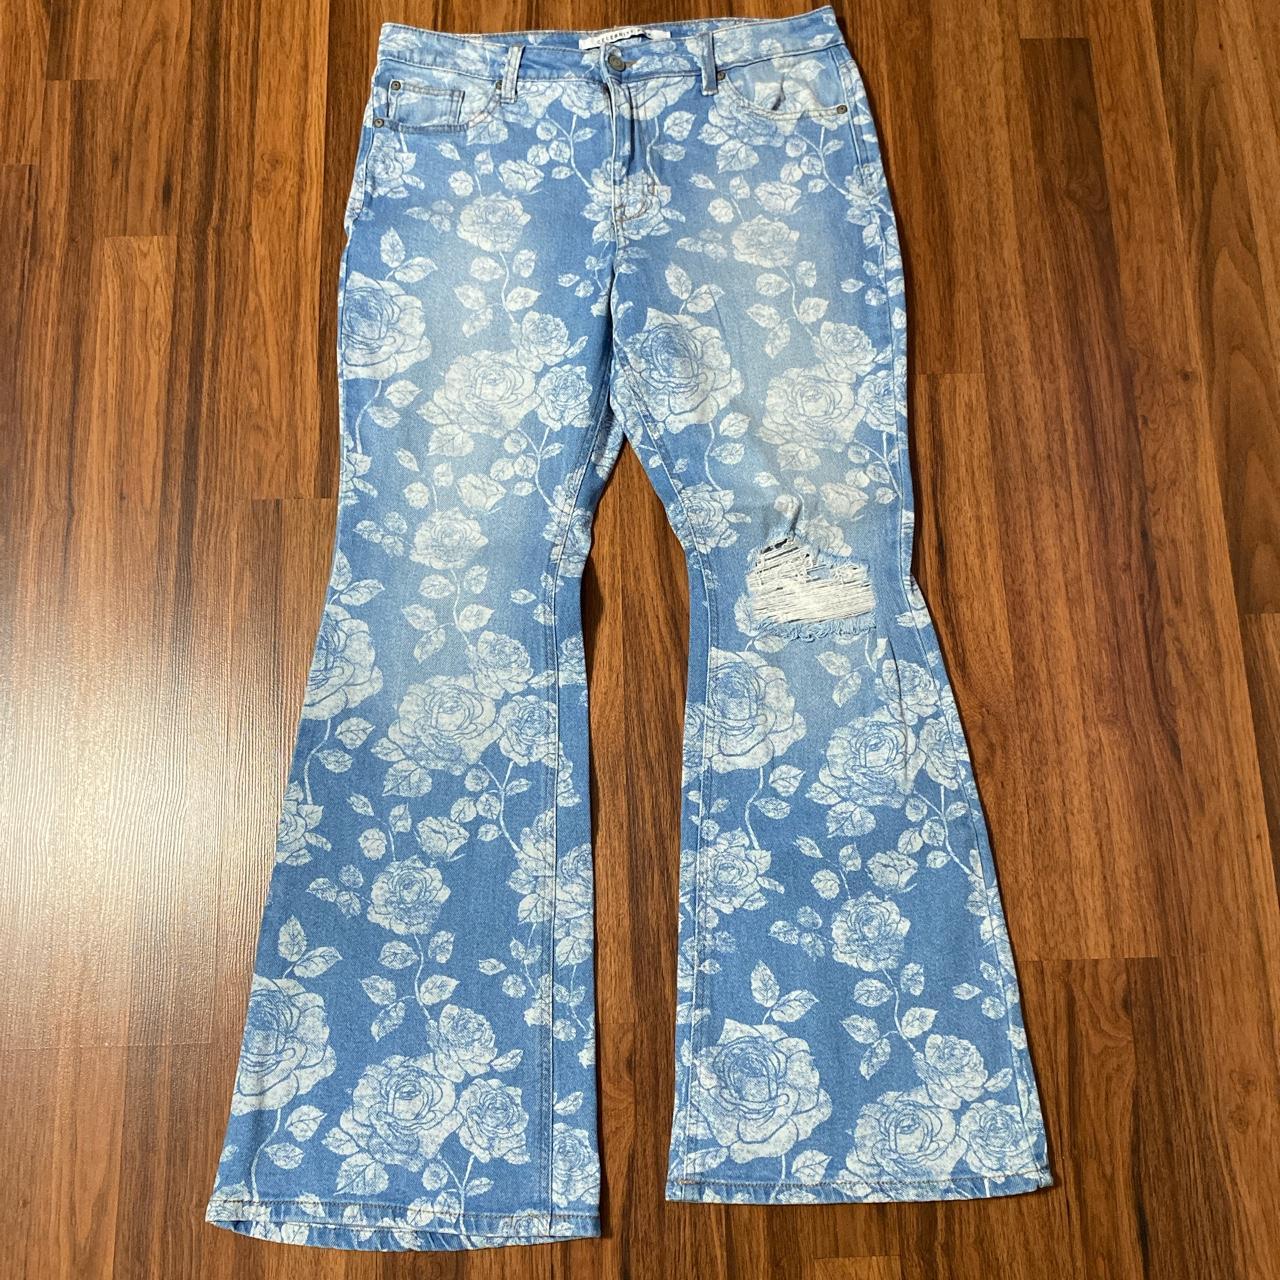 Kanye West Floral Print Denim Jeans Street Wear Colorblocked Slim Straight  Jeans for Men and Women Vintage Washed Denim Pant